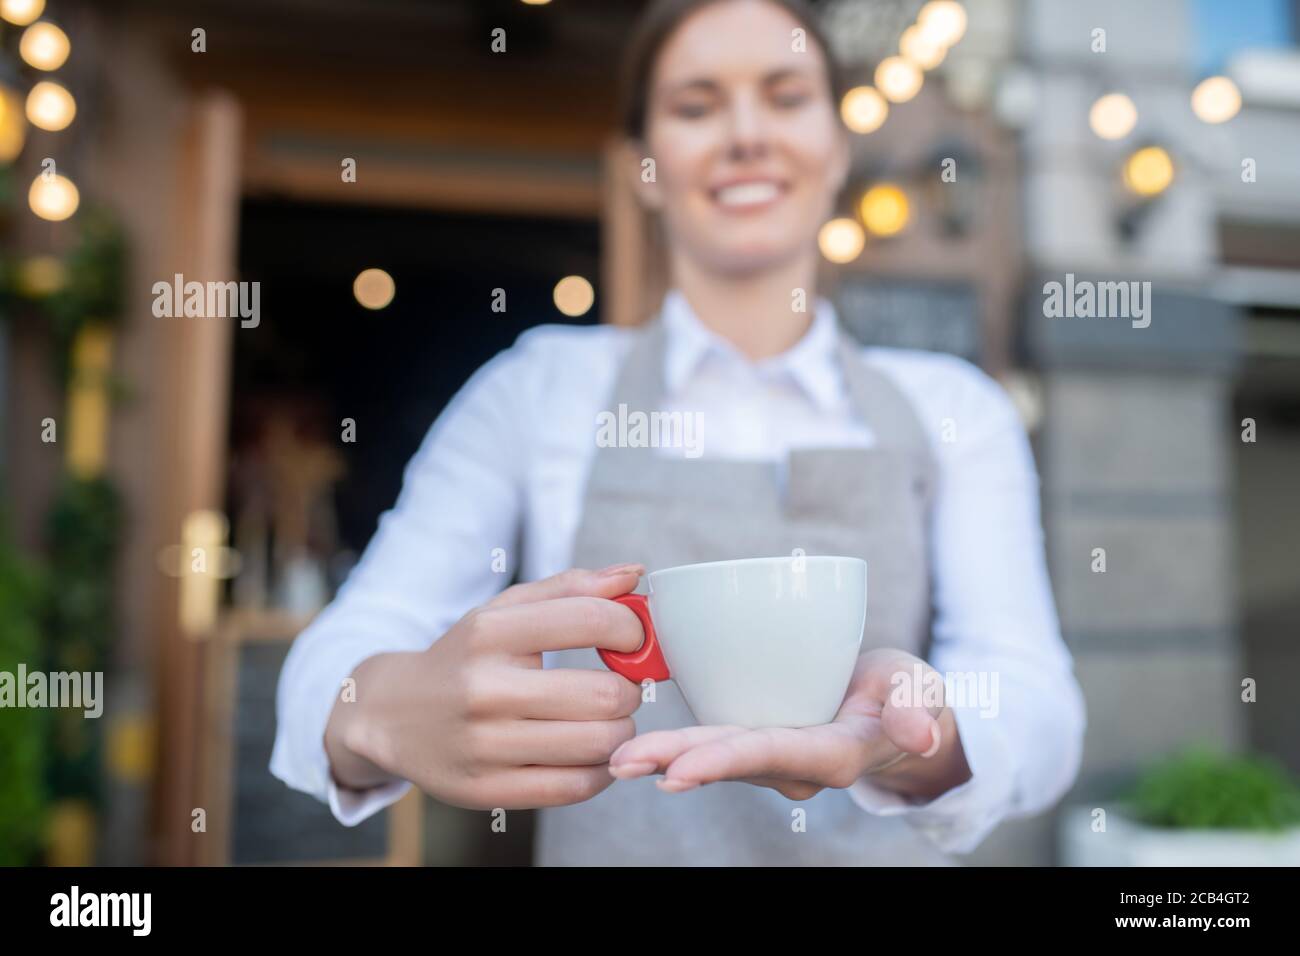 Jolie serveuse en tablier gris offrant une tasse de café Banque D'Images